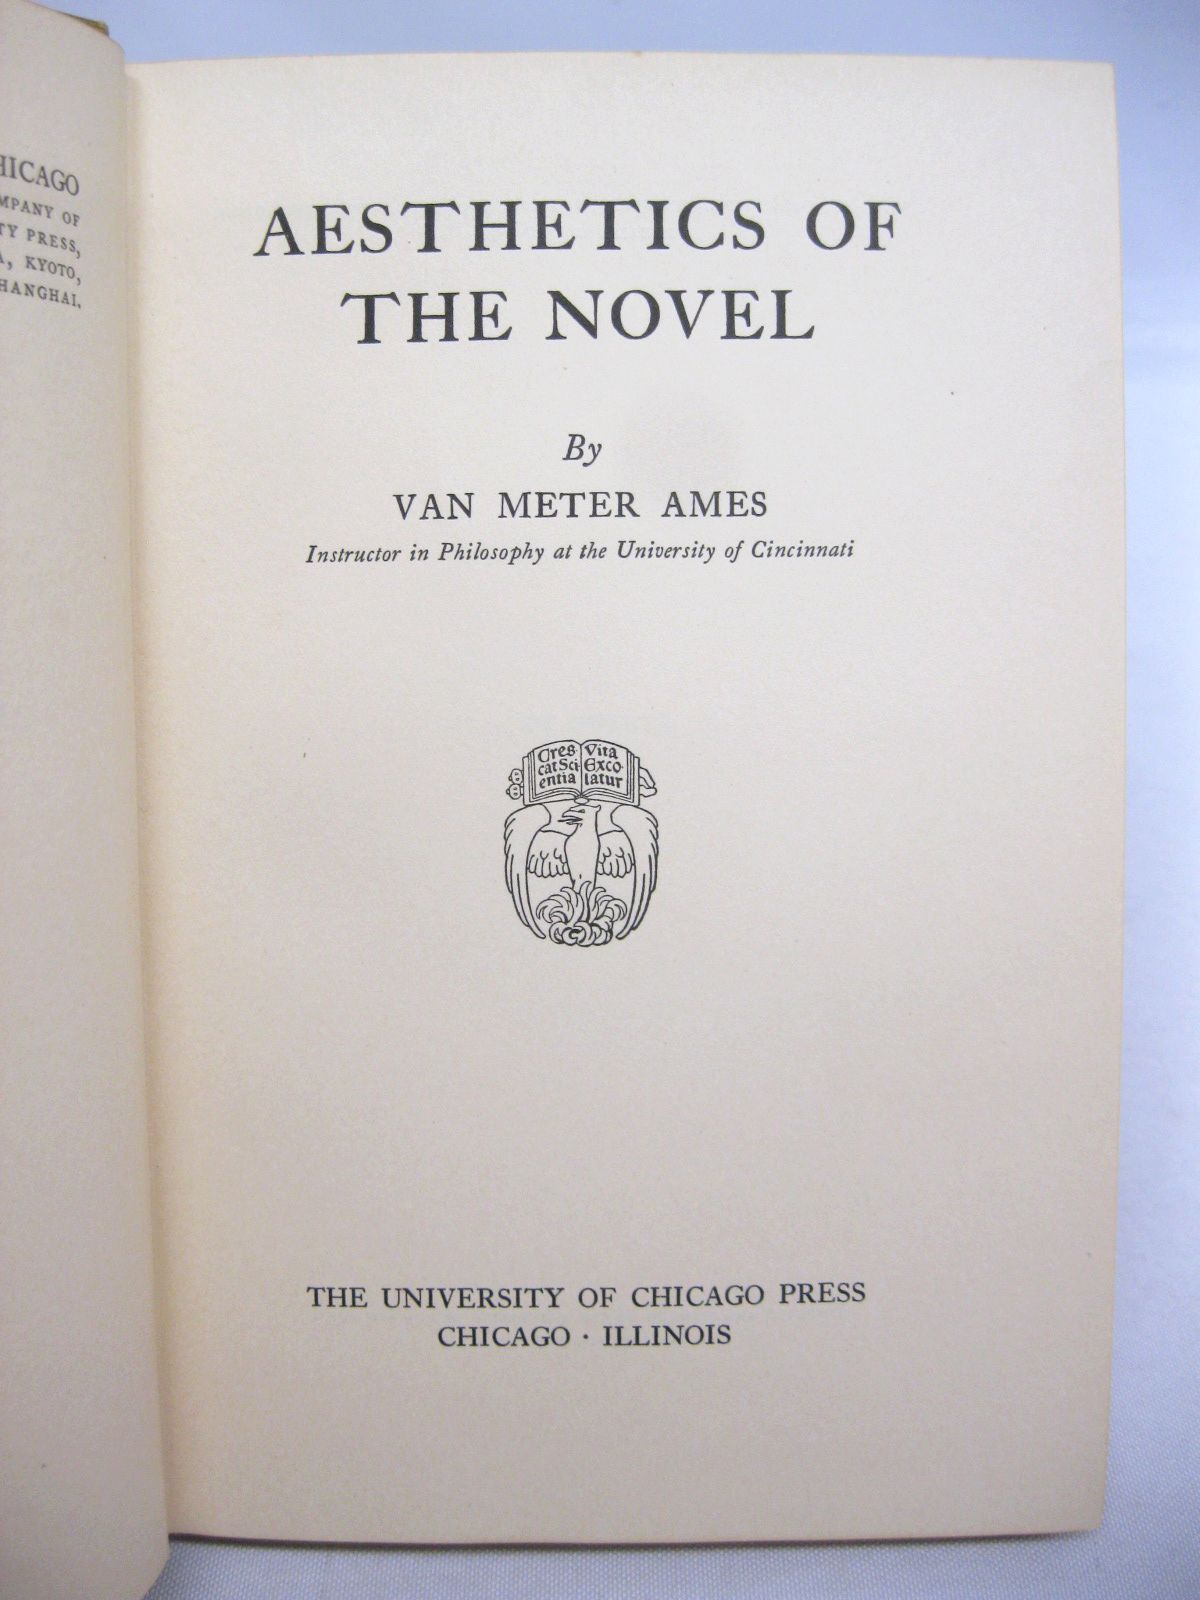 Aesthetics of the Novel by Van Meter Ames